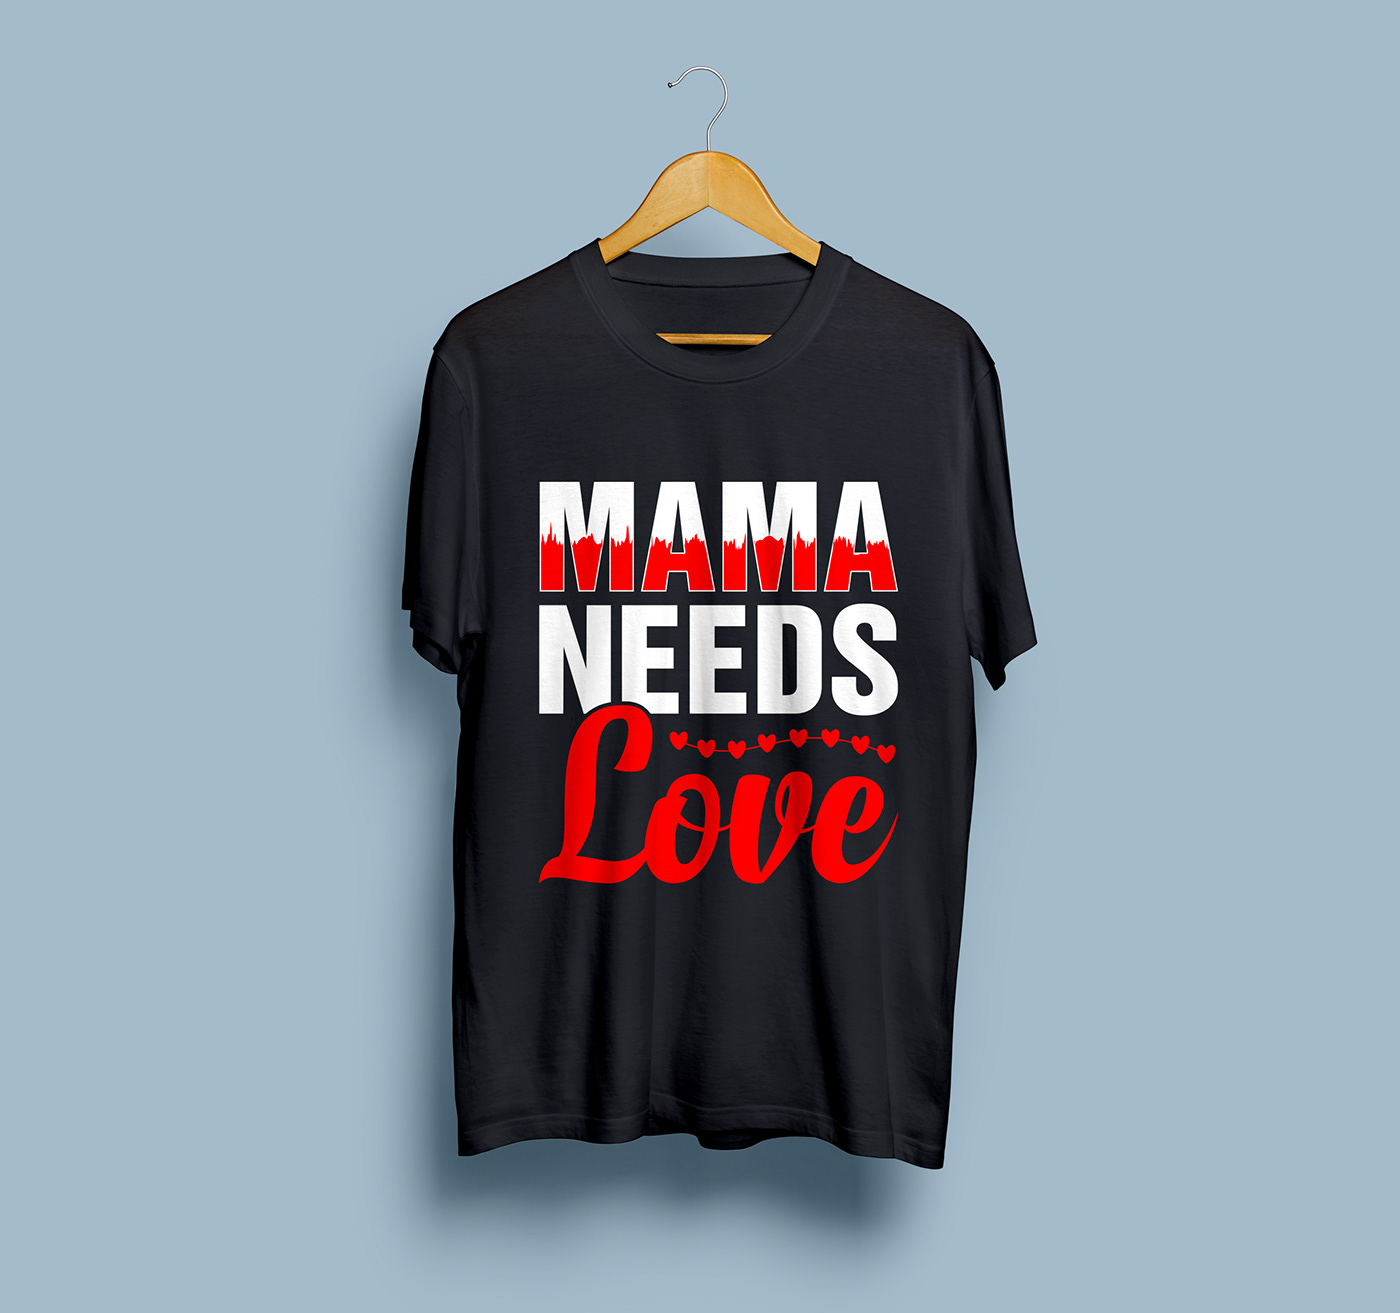 Mother's day t-shirt Mother's Day Mother's Day design T-Shirt Design mom t-shirt design woman t-shirt Best T-shirt Design UNIQUE T-SHIRT DESIGN girl's t-shirt design mommy tshirt